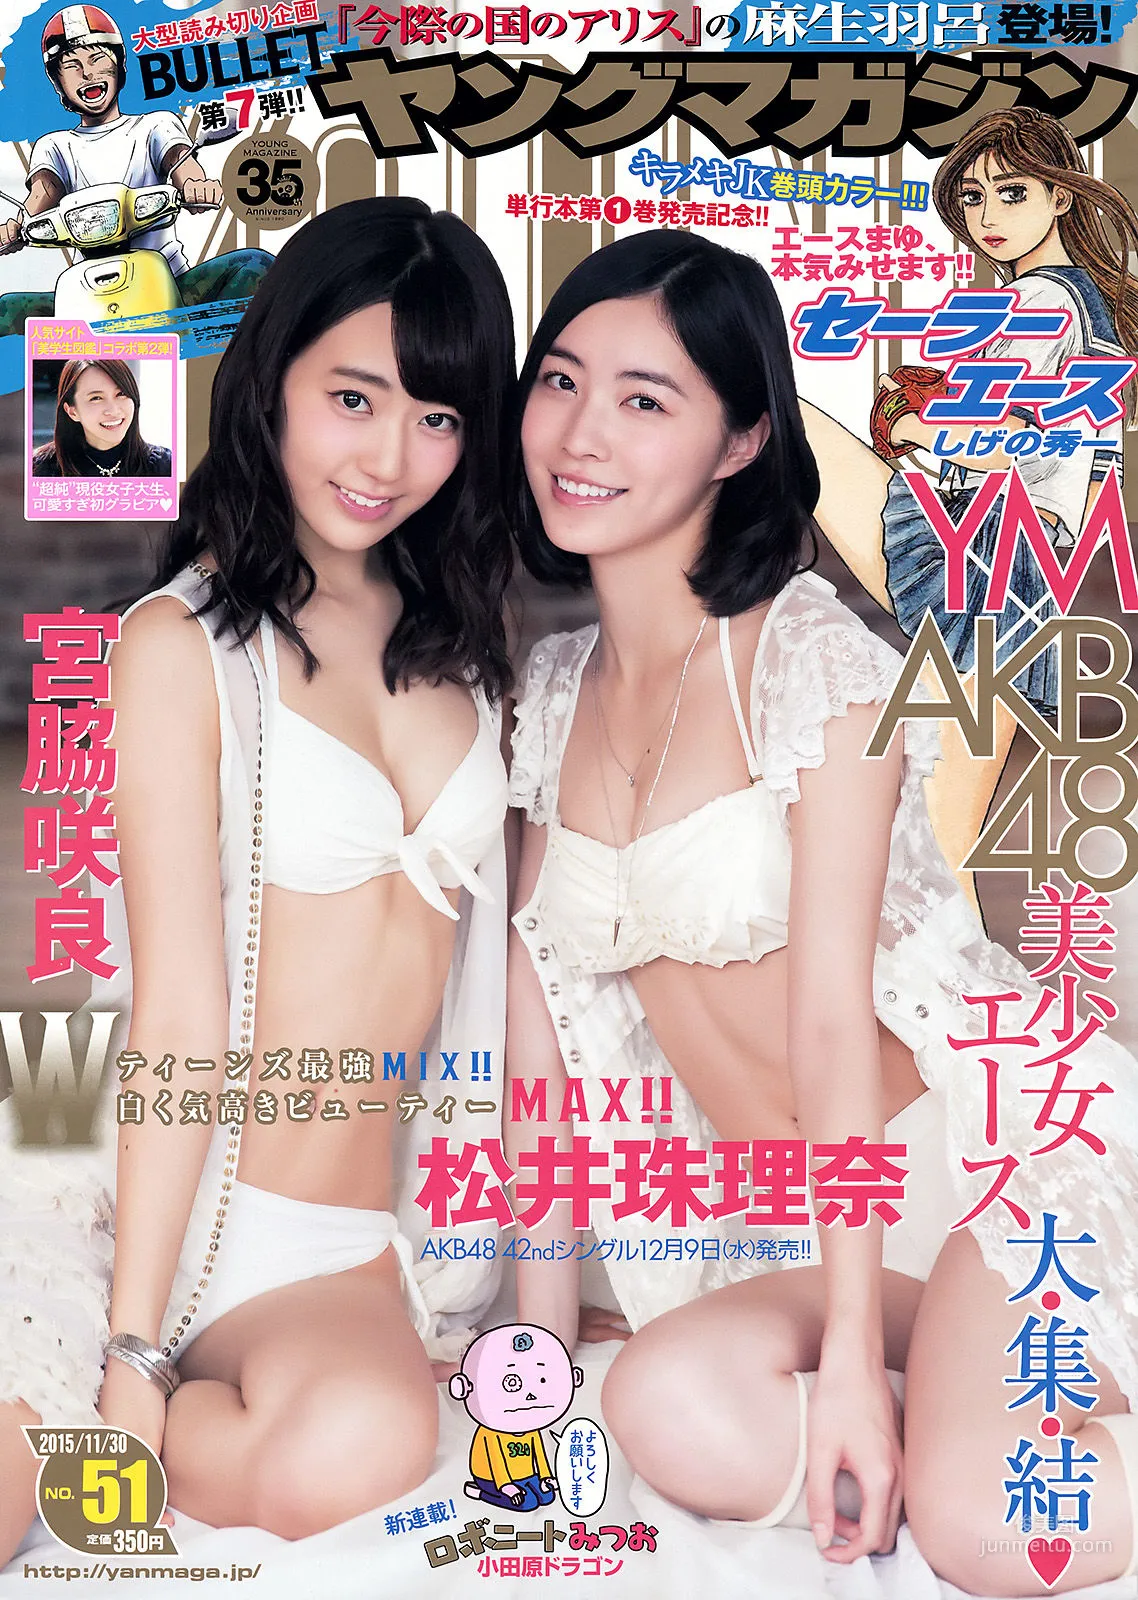 [Young Magazine] 宮脇咲良 松井珠理奈 2015年No.51 写真杂志1